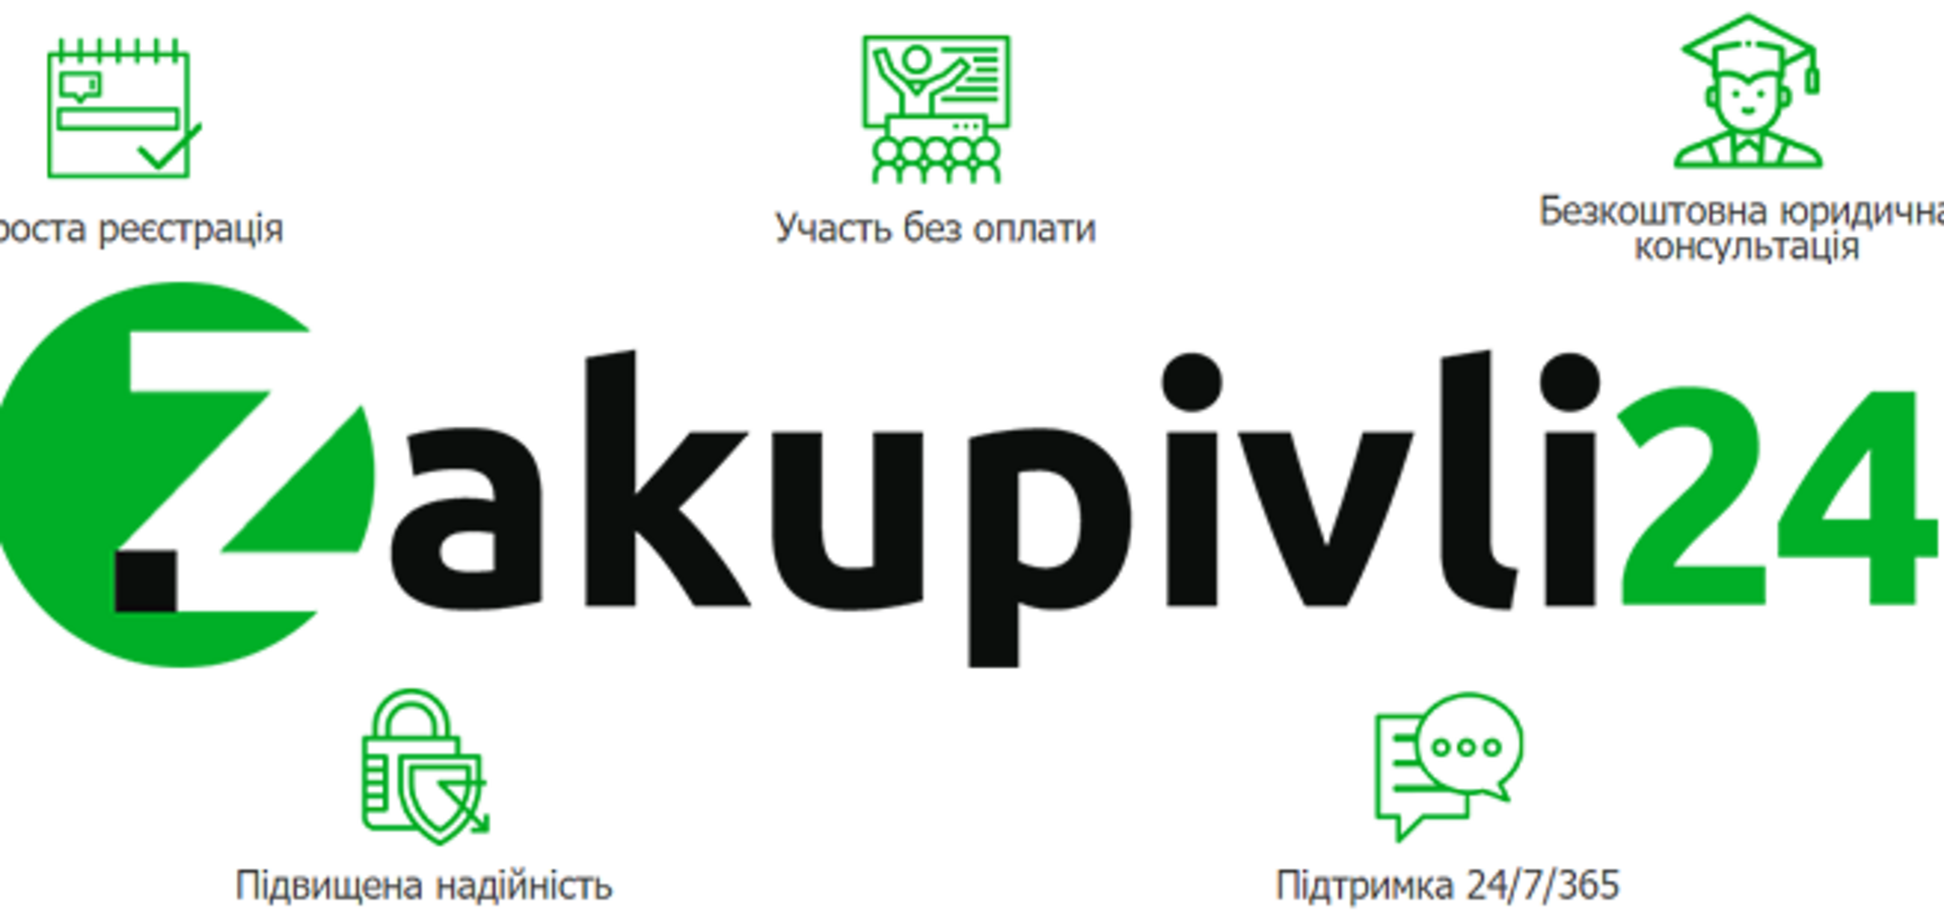 В Украине запустили первую государственную  площадку для госзакупок zakupivli24